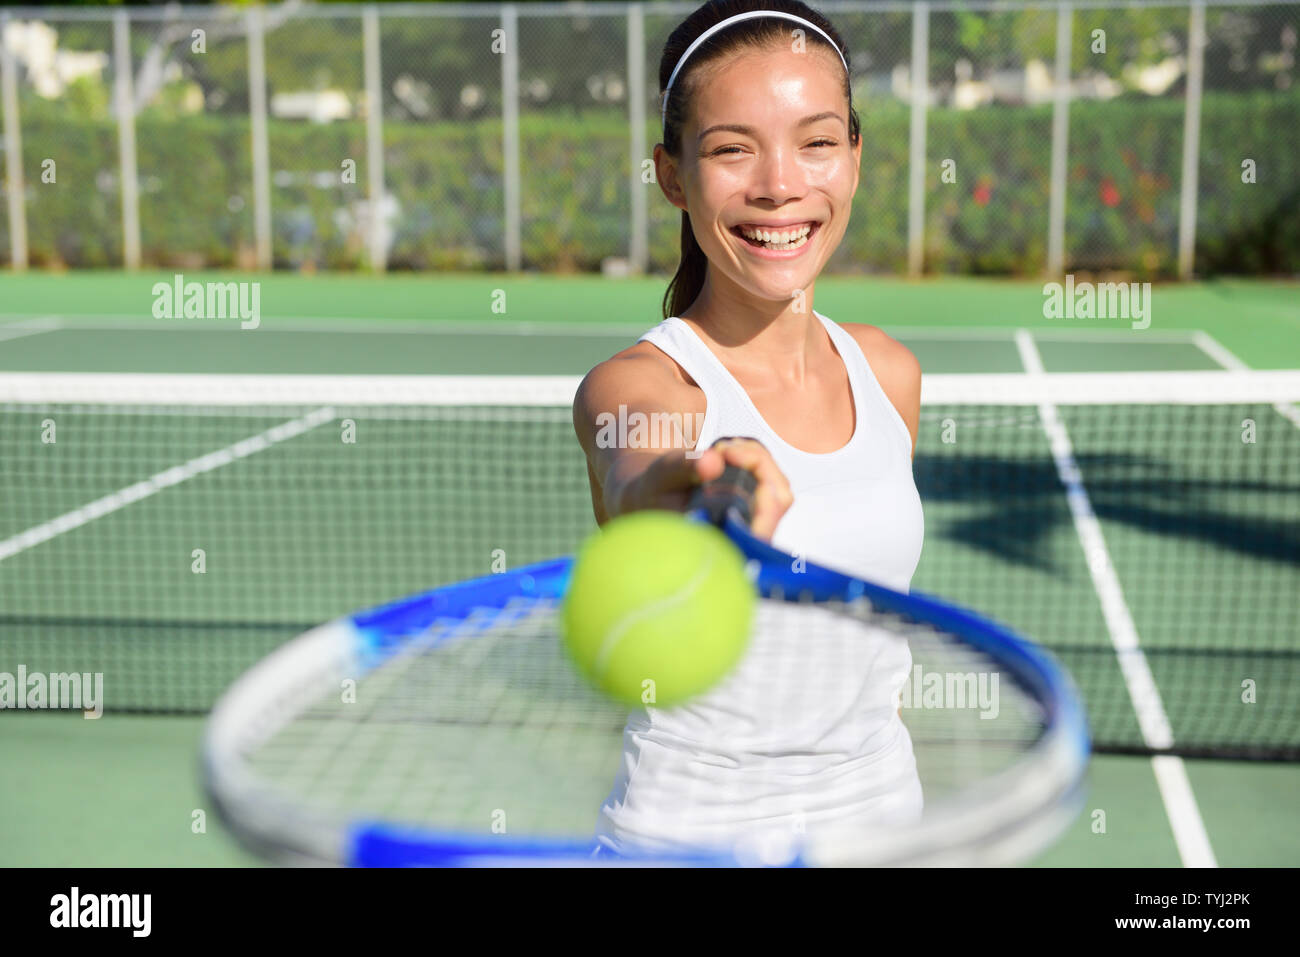 Portrait de joueur de tennis. Femme montrant balle de tennis racket smiling happy. Athlète féminin vous invite à jouer au tennis. Active en bonne santé et sport de plein air concept de vie de forme physique. Banque D'Images